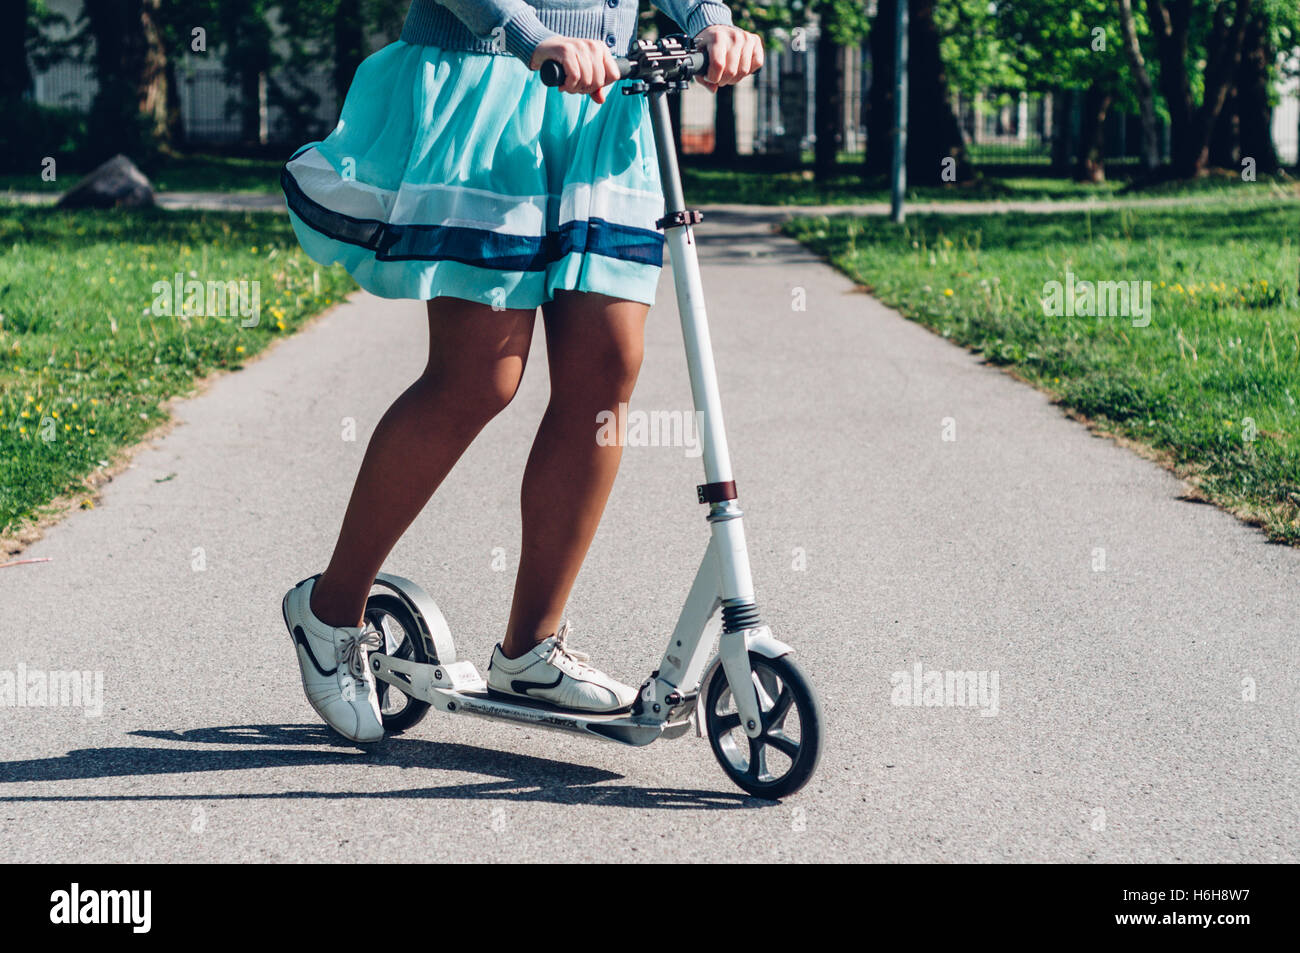 Le gambe della giovane donna in abiti sul kick scooter. Tonica Instagram retrò effetto vintage Foto Stock